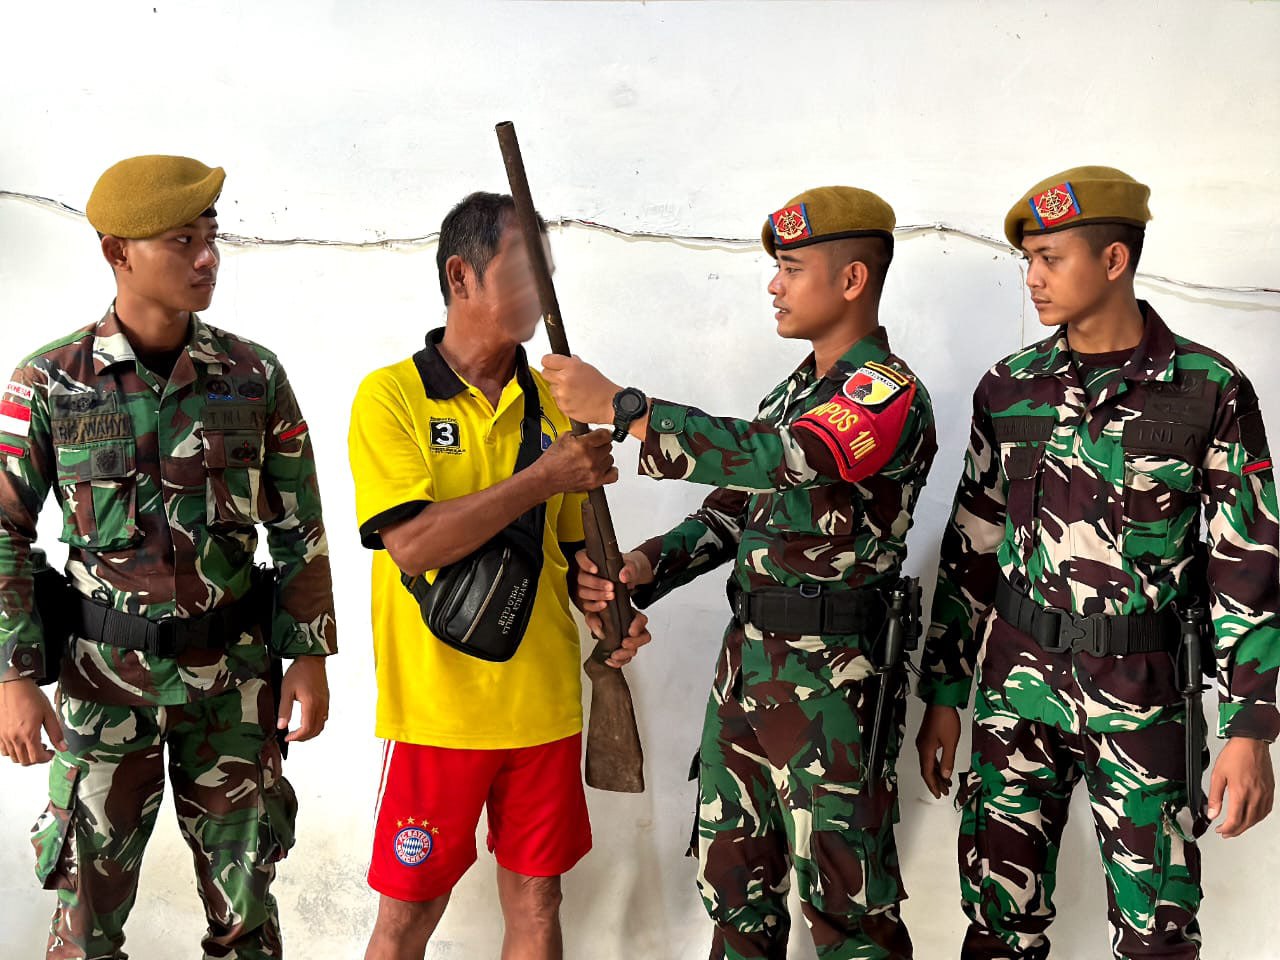 Danpos Gabma Simanggaris Satgas Yonarhanud 8/MBC Terima Senjata Api Rakitan Warga